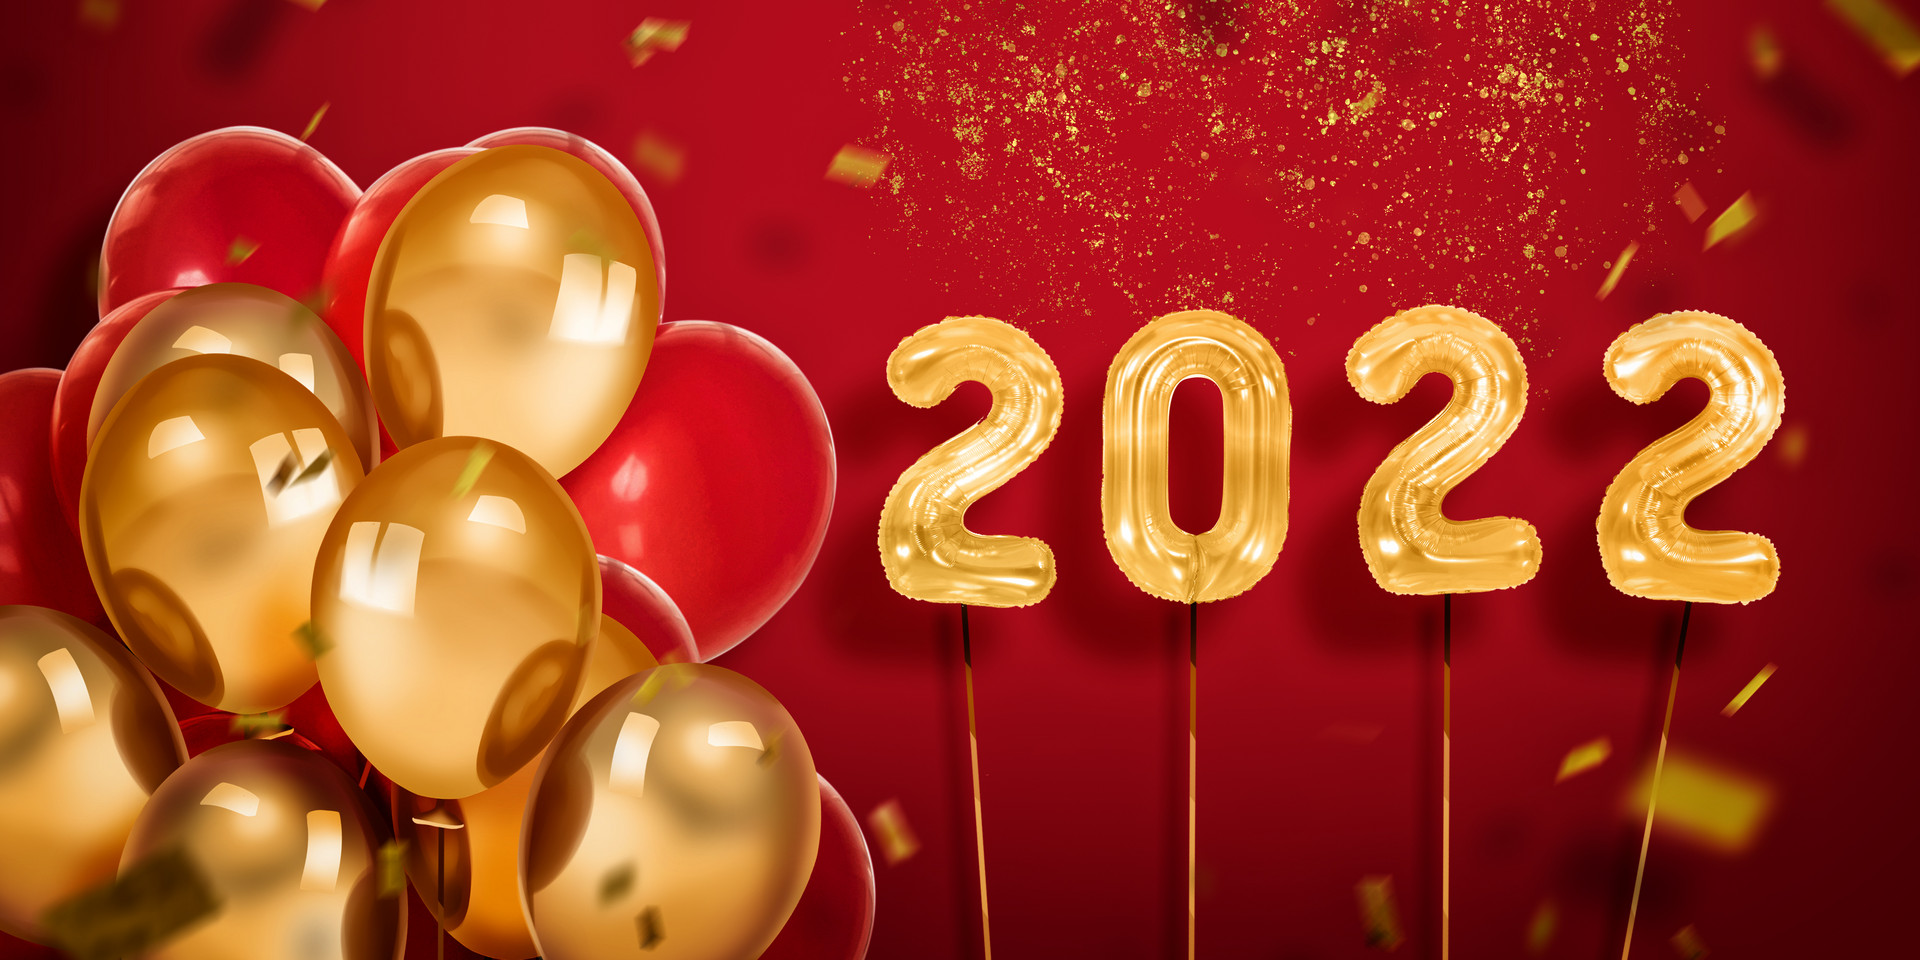 نیا سال آ رہا ہے!سوپو چھٹیوں کی مبارکباد پیش کرتا ہے، اور ہم 2022 میں ہاتھ جوڑیں گے!